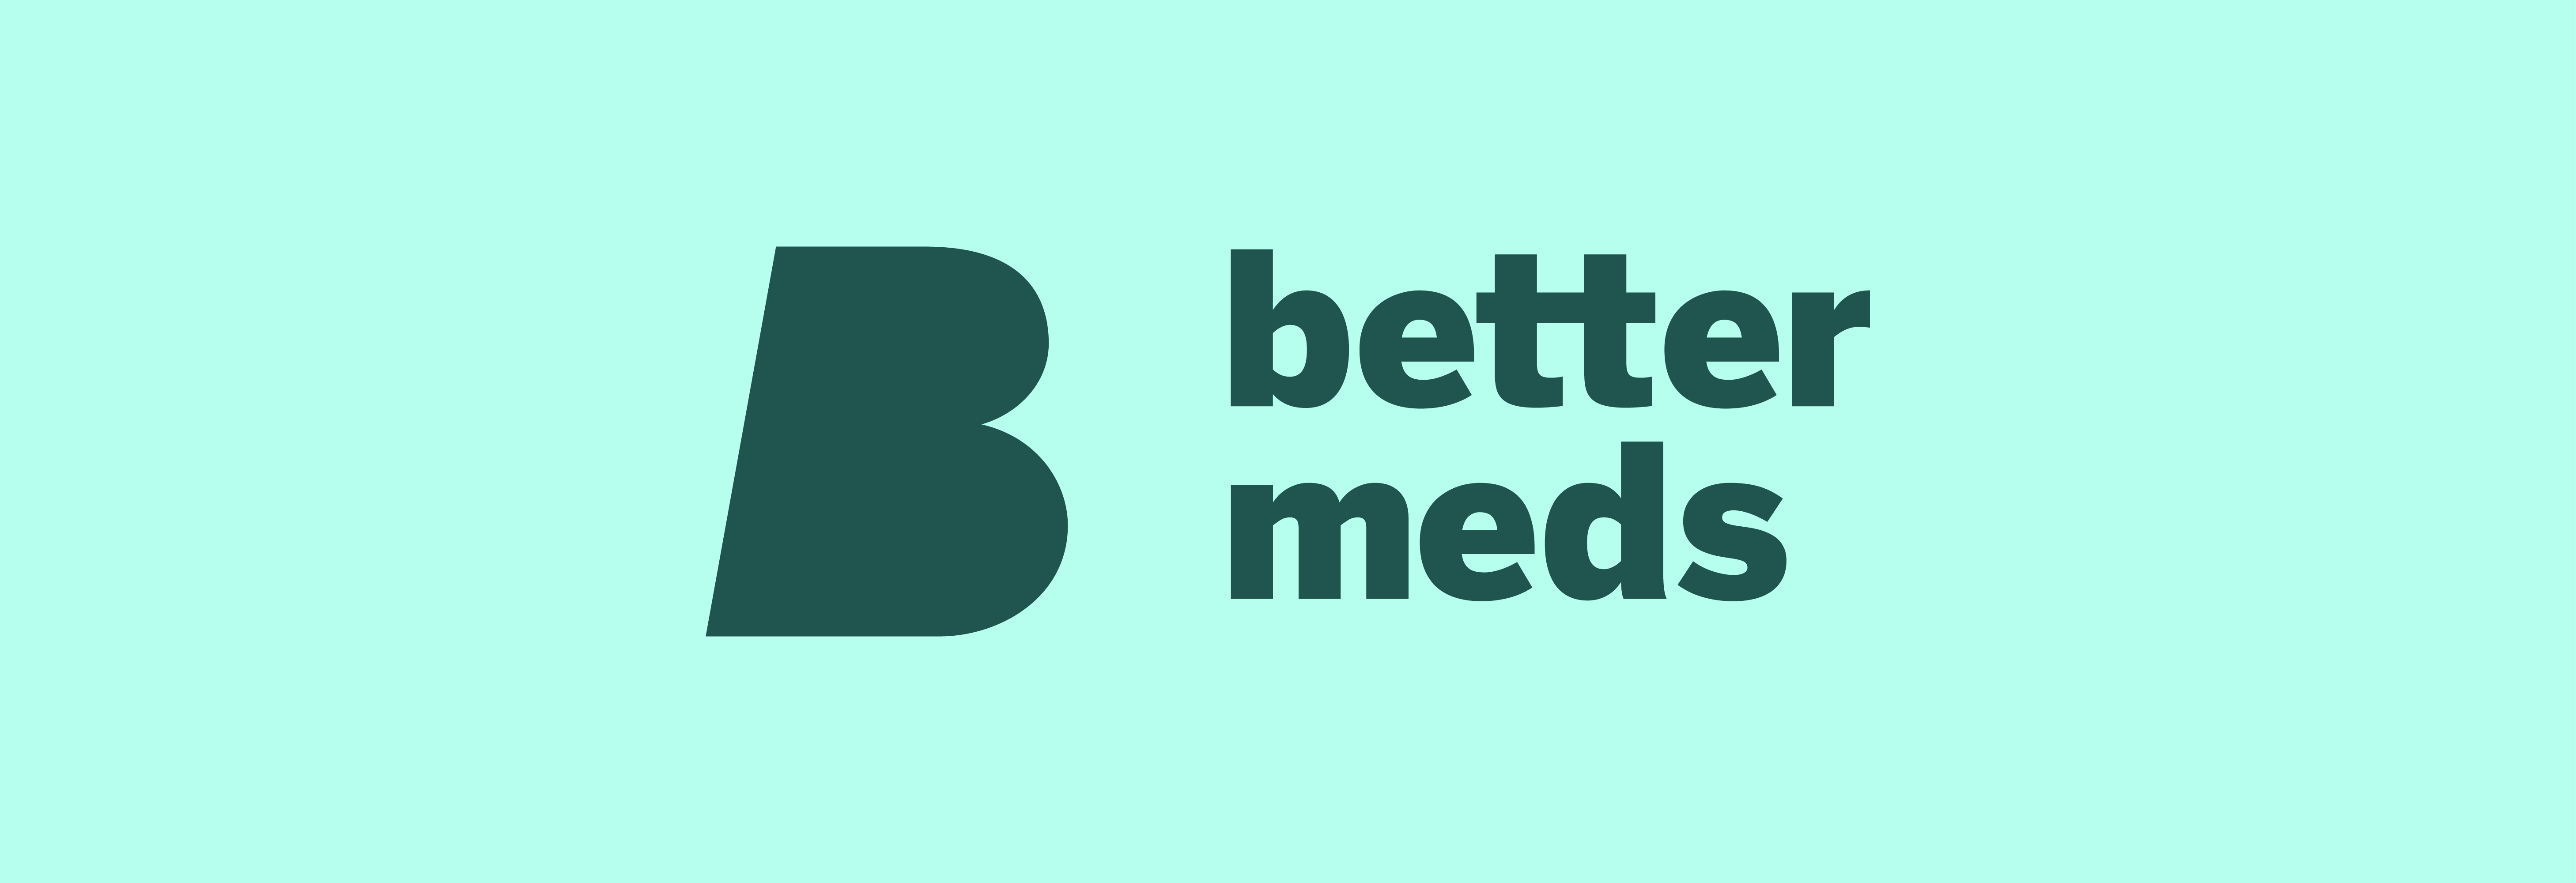 Better-Meds-1400x480